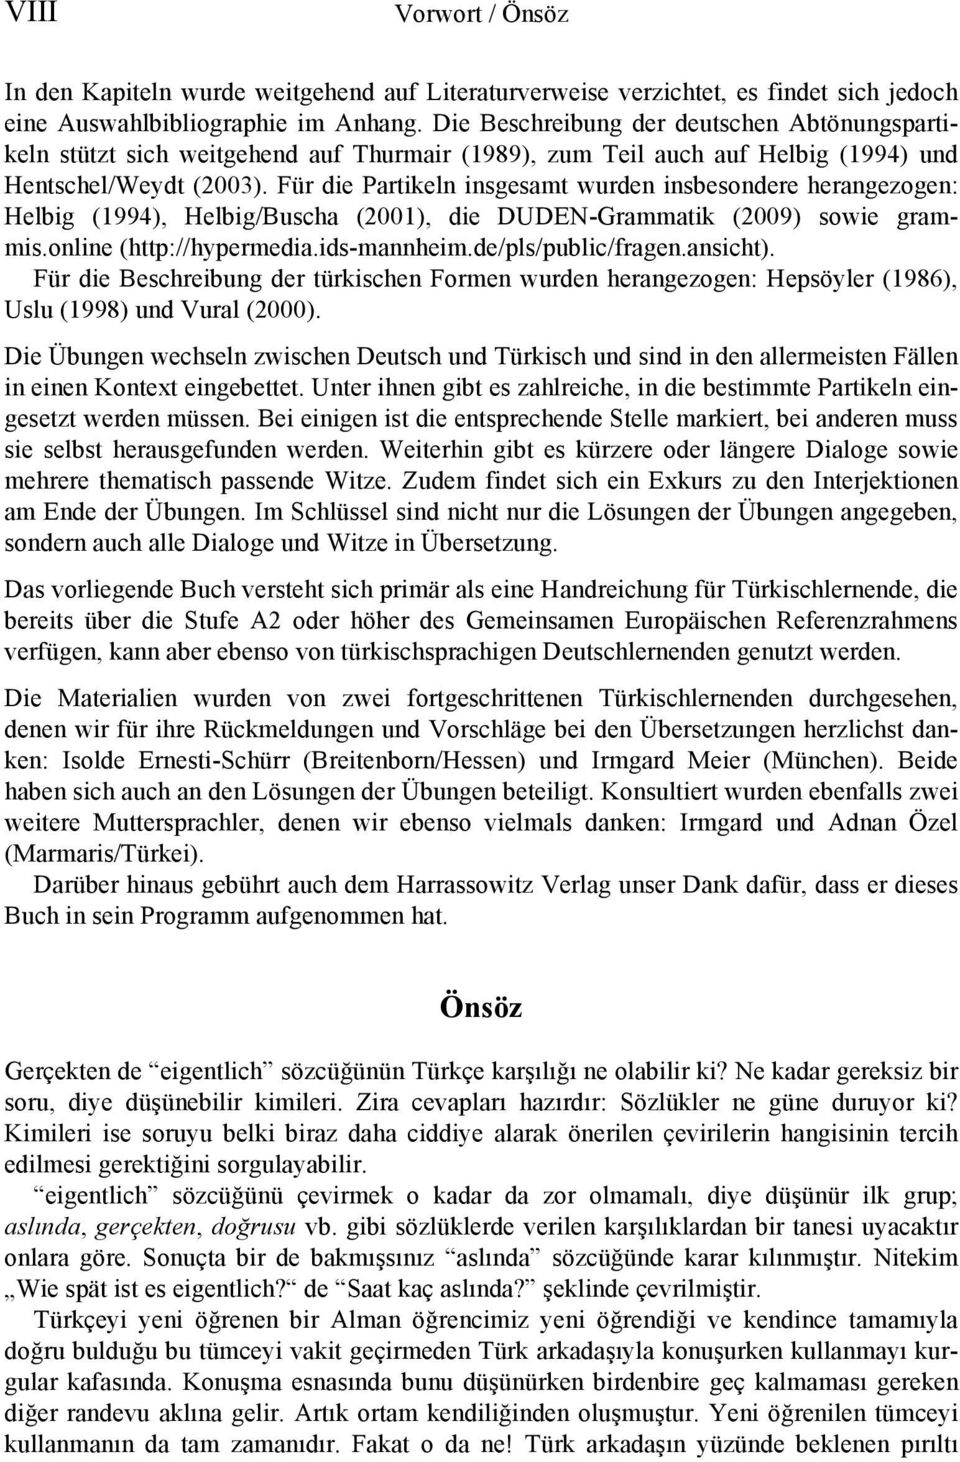 Für die Partikeln insgesamt wurden insbesondere herangezogen: Helbig (1994), Helbig/Buscha (2001), die DUDEN-Grammatik (2009) sowie grammis.online (http://hypermedia.ids-mannheim.de/pls/public/fragen.